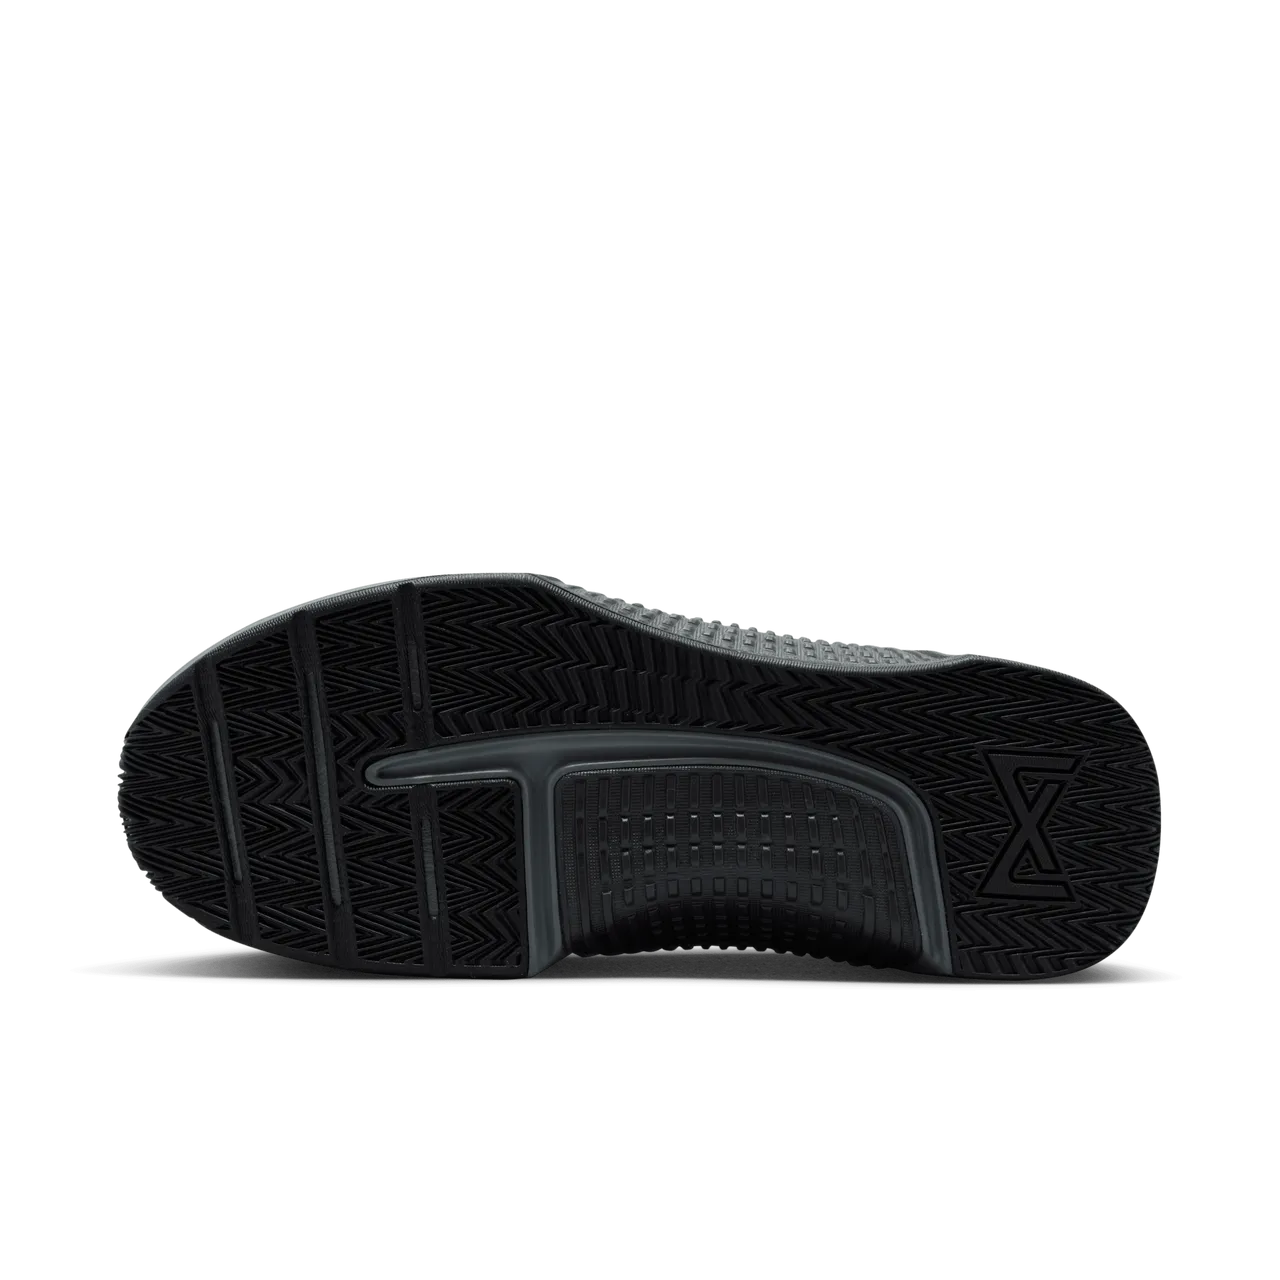 Nike Metcon 9 EasyOn work-outschoenen voor heren - Zwart